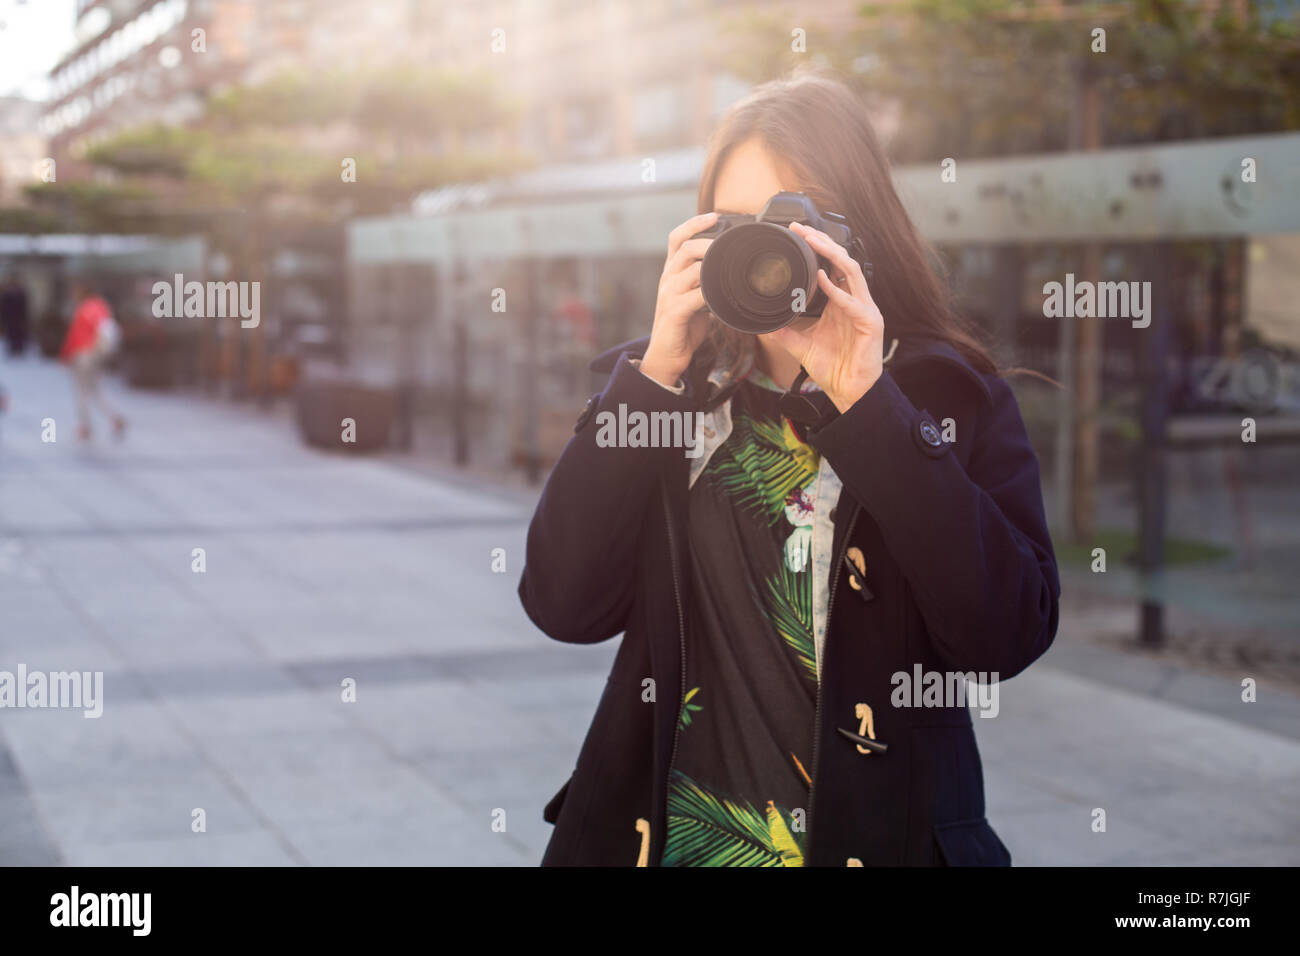 Attrazione turistica fotografo di donna con la telecamera per esterno in strada della citta'. Sun flare Foto Stock